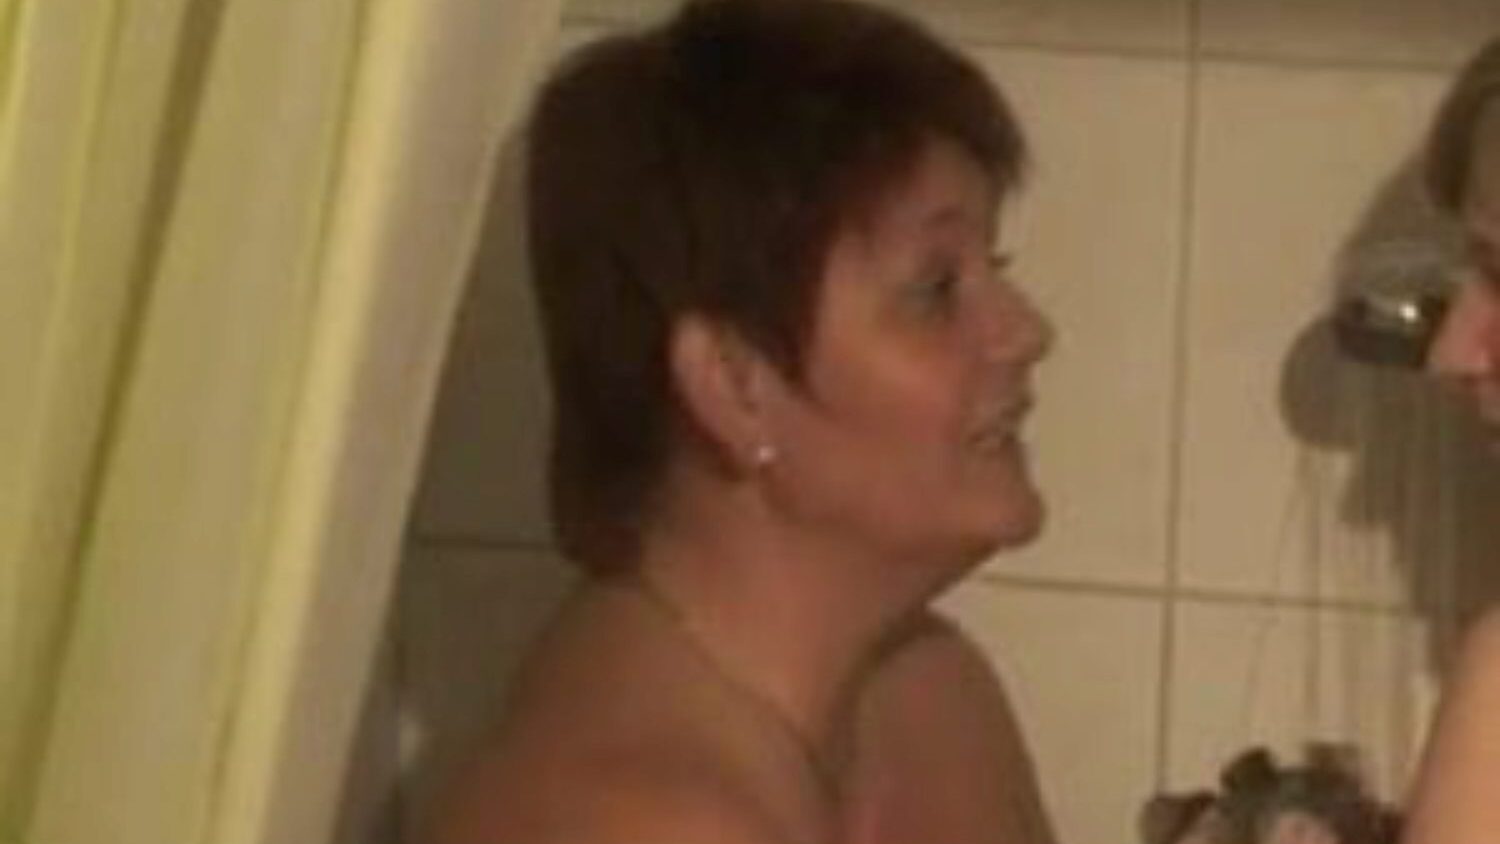 två bi-tjejer duschar: gratis lesbisk porr video 76 - xhamster titta på 2 bi-tjejer duschar rör älskande film scen för gratis för alla på xhamster, med den dominerande samlingen av tyska lesbisk, mor jag skulle vilja knulla & bbw pornografi filmsekvenser